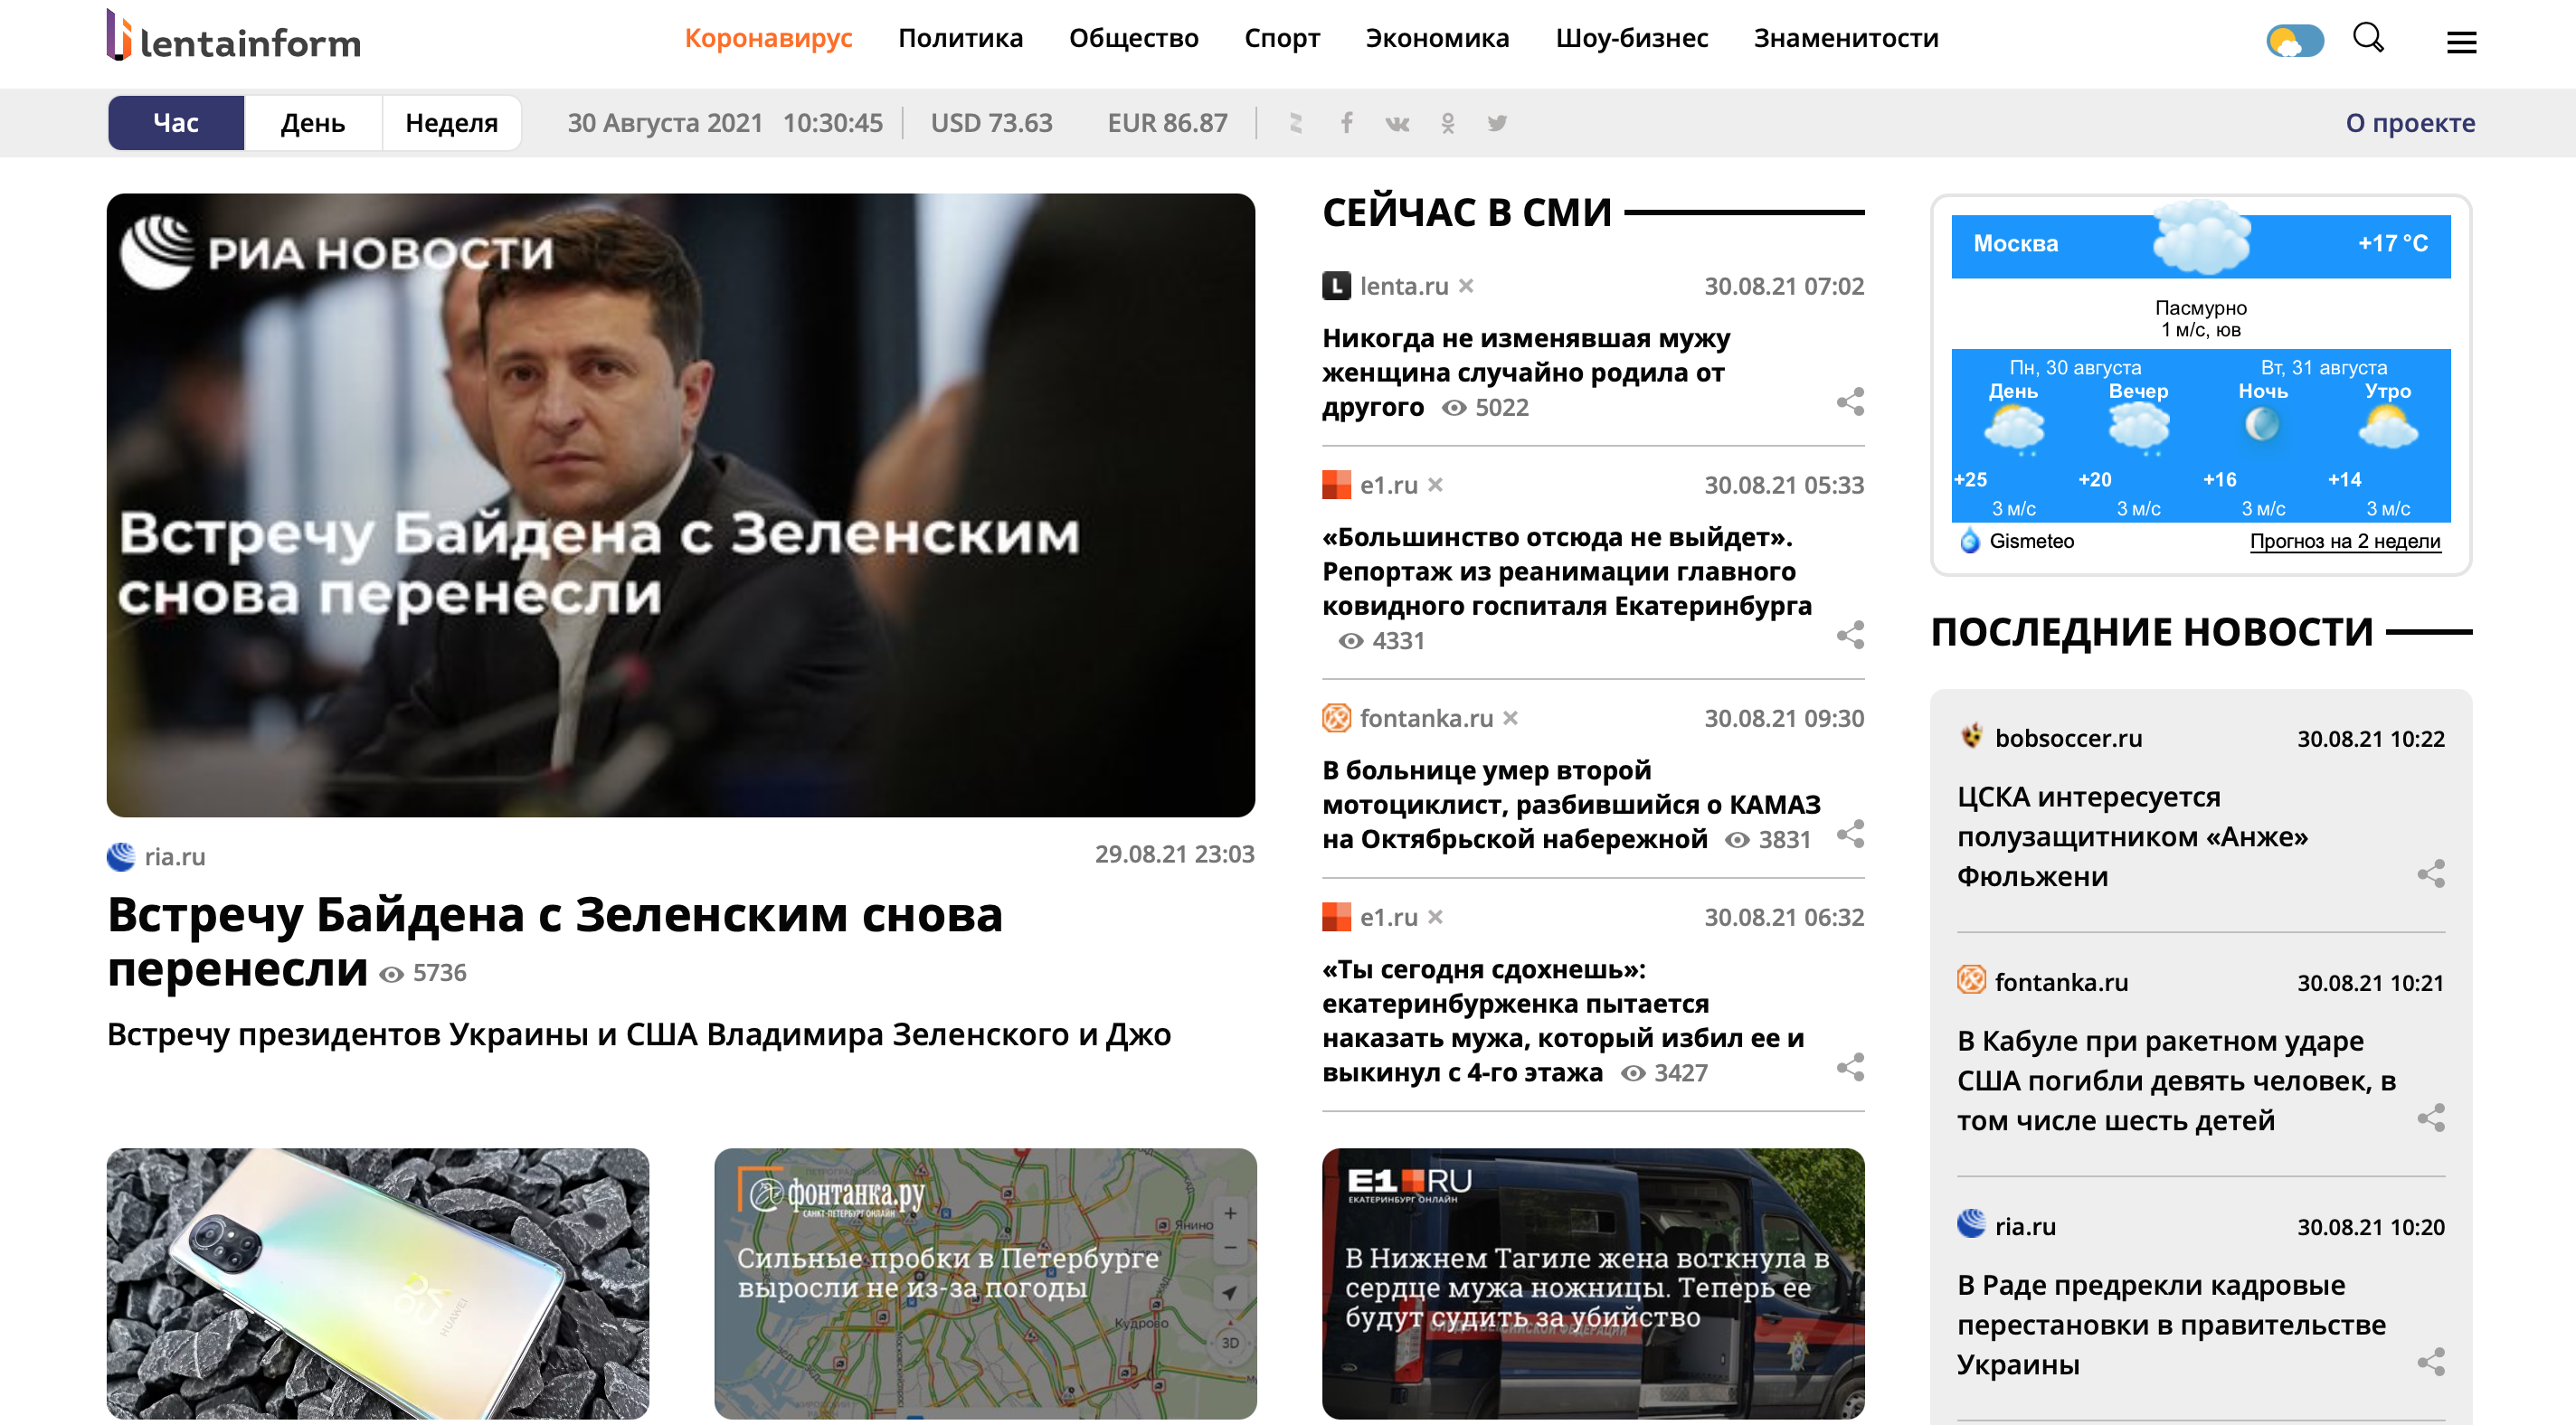 Новостной агрегатор сми2 все новости россии